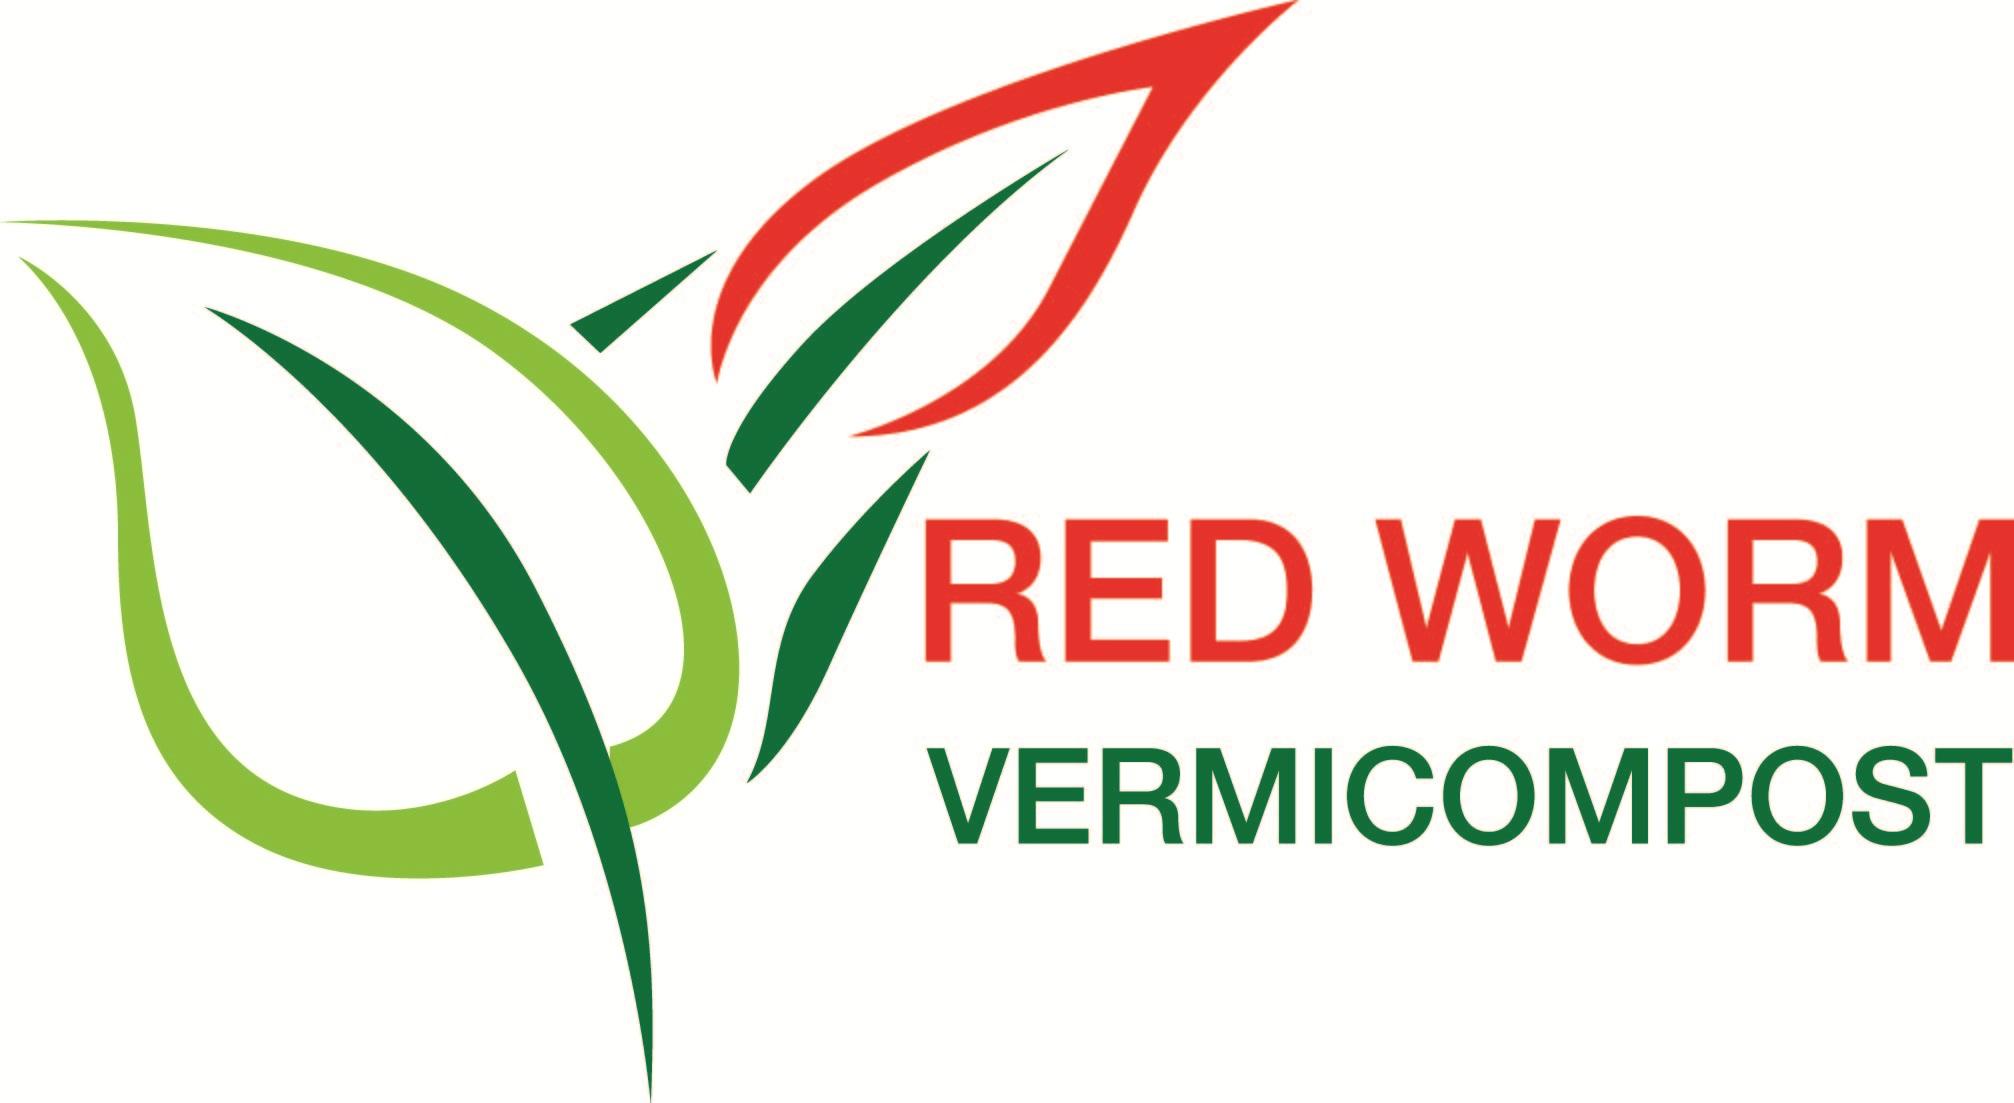 Vermicompost Logo - RED WORM VERMICOMPOST